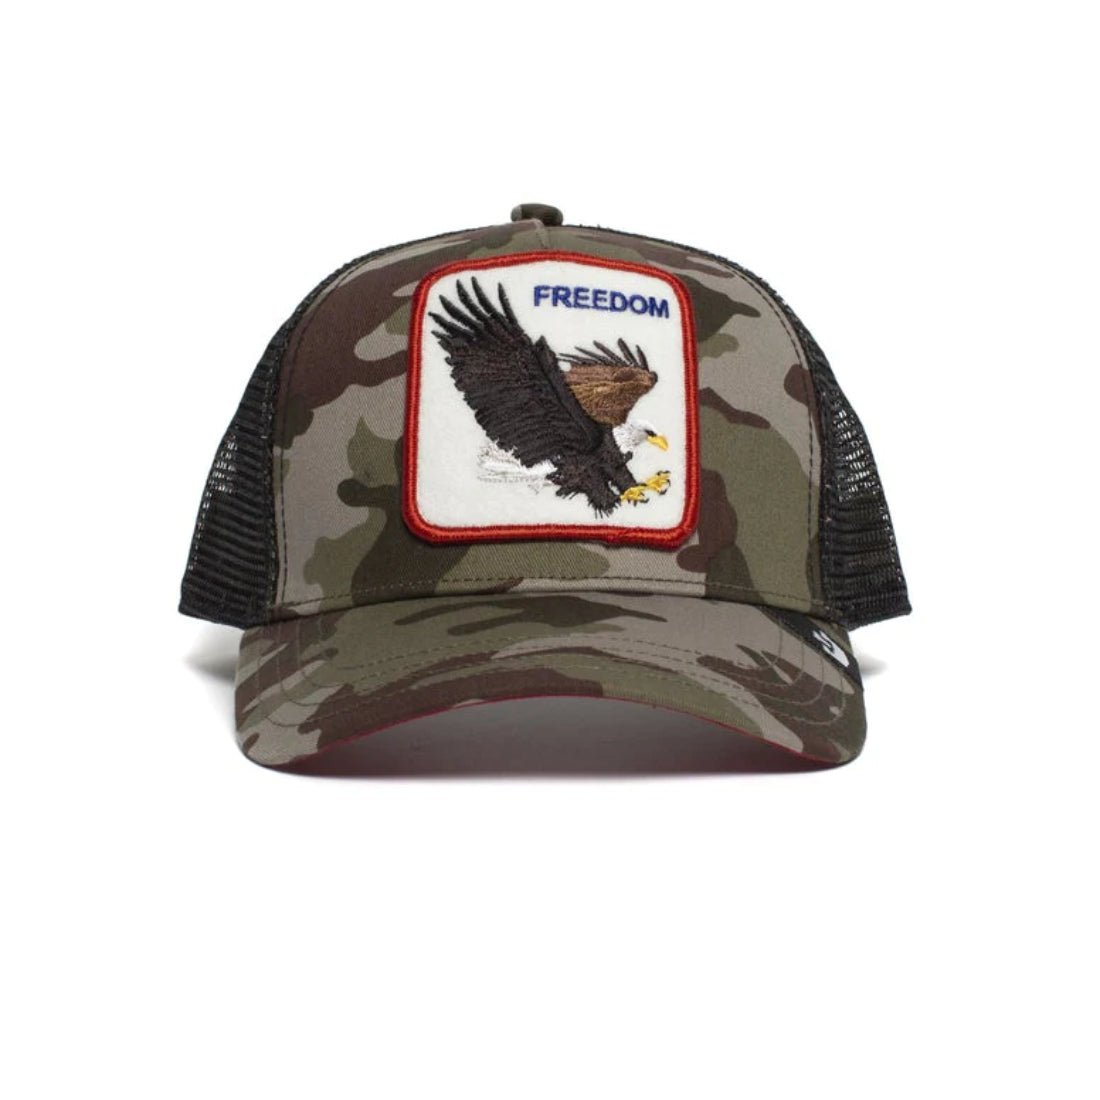 Queue Caps Freedom Camouflage Cap - قبعة - Store 974 | ستور ٩٧٤